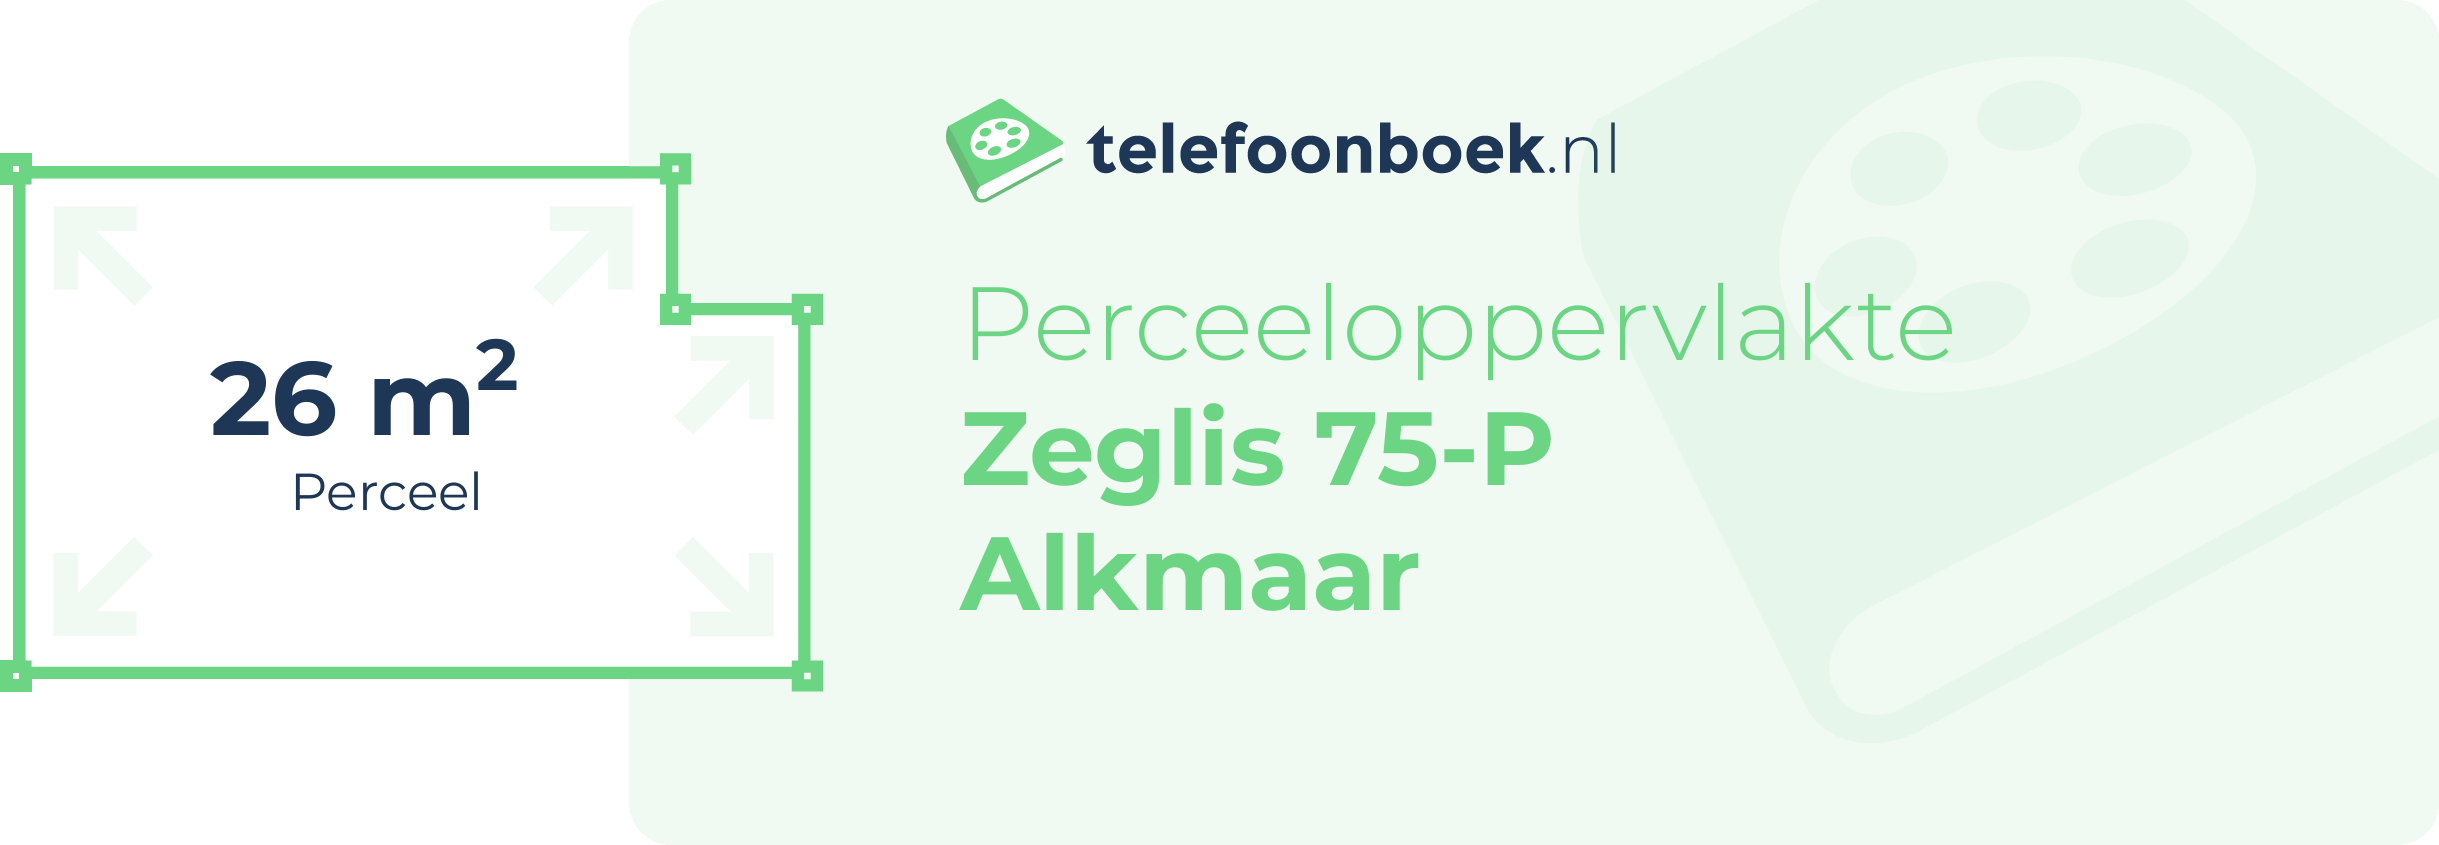 Perceeloppervlakte Zeglis 75-P Alkmaar